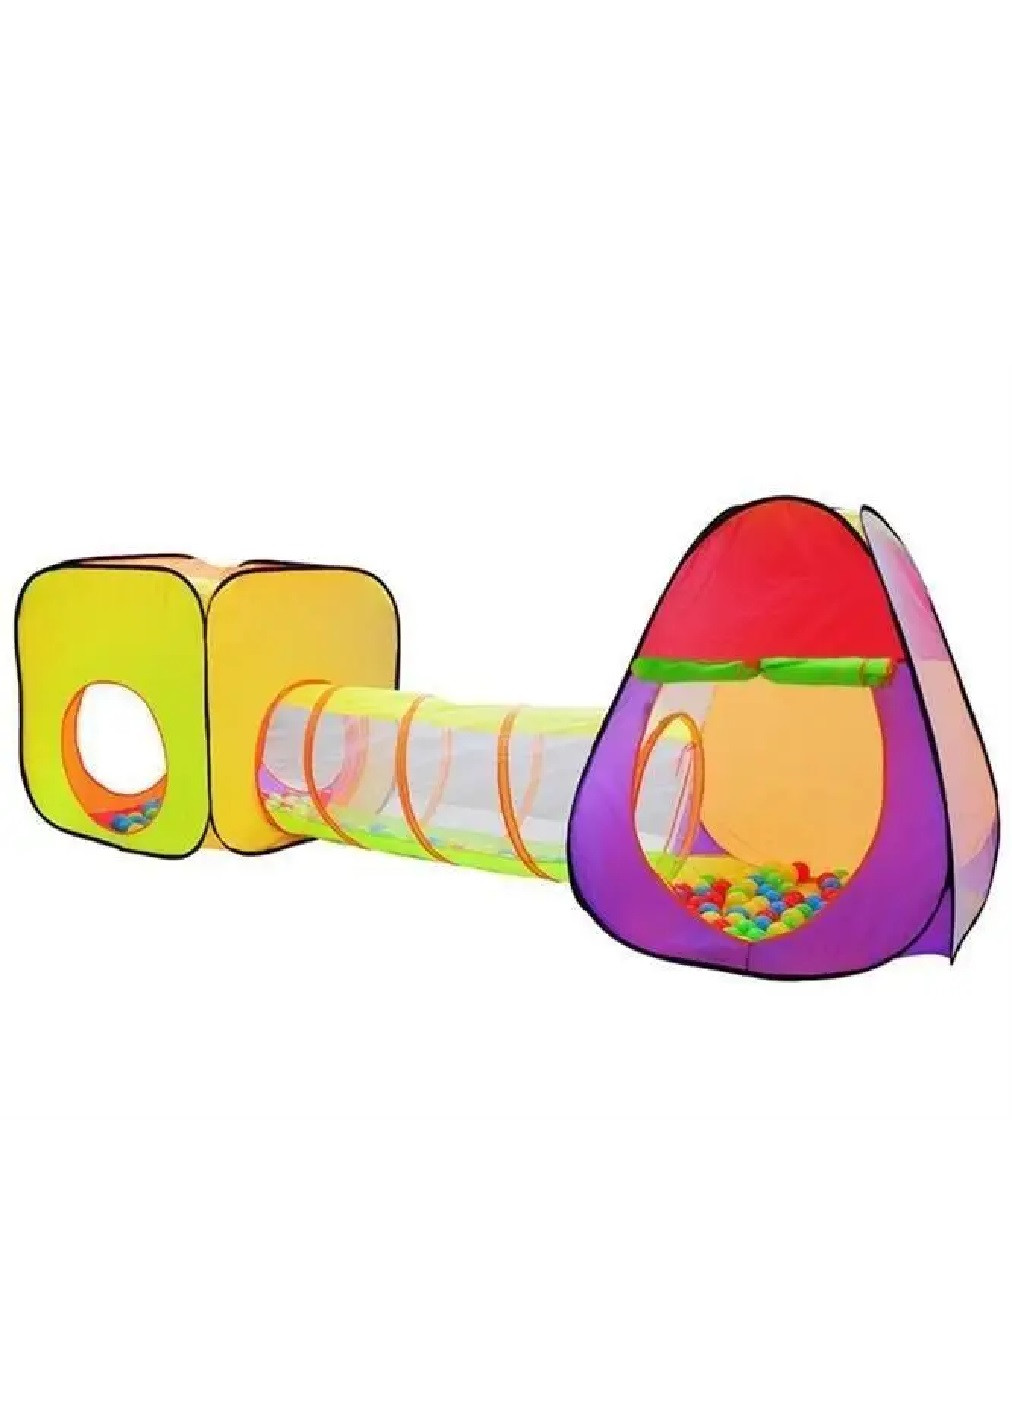 Дитячий ігровий намет будиночок іглу подвійна з тунелем м'ячами 3 в 1 для дітей малюків від 3 років 280x83x100 см (474882-Prob) Unbranded (260089771)